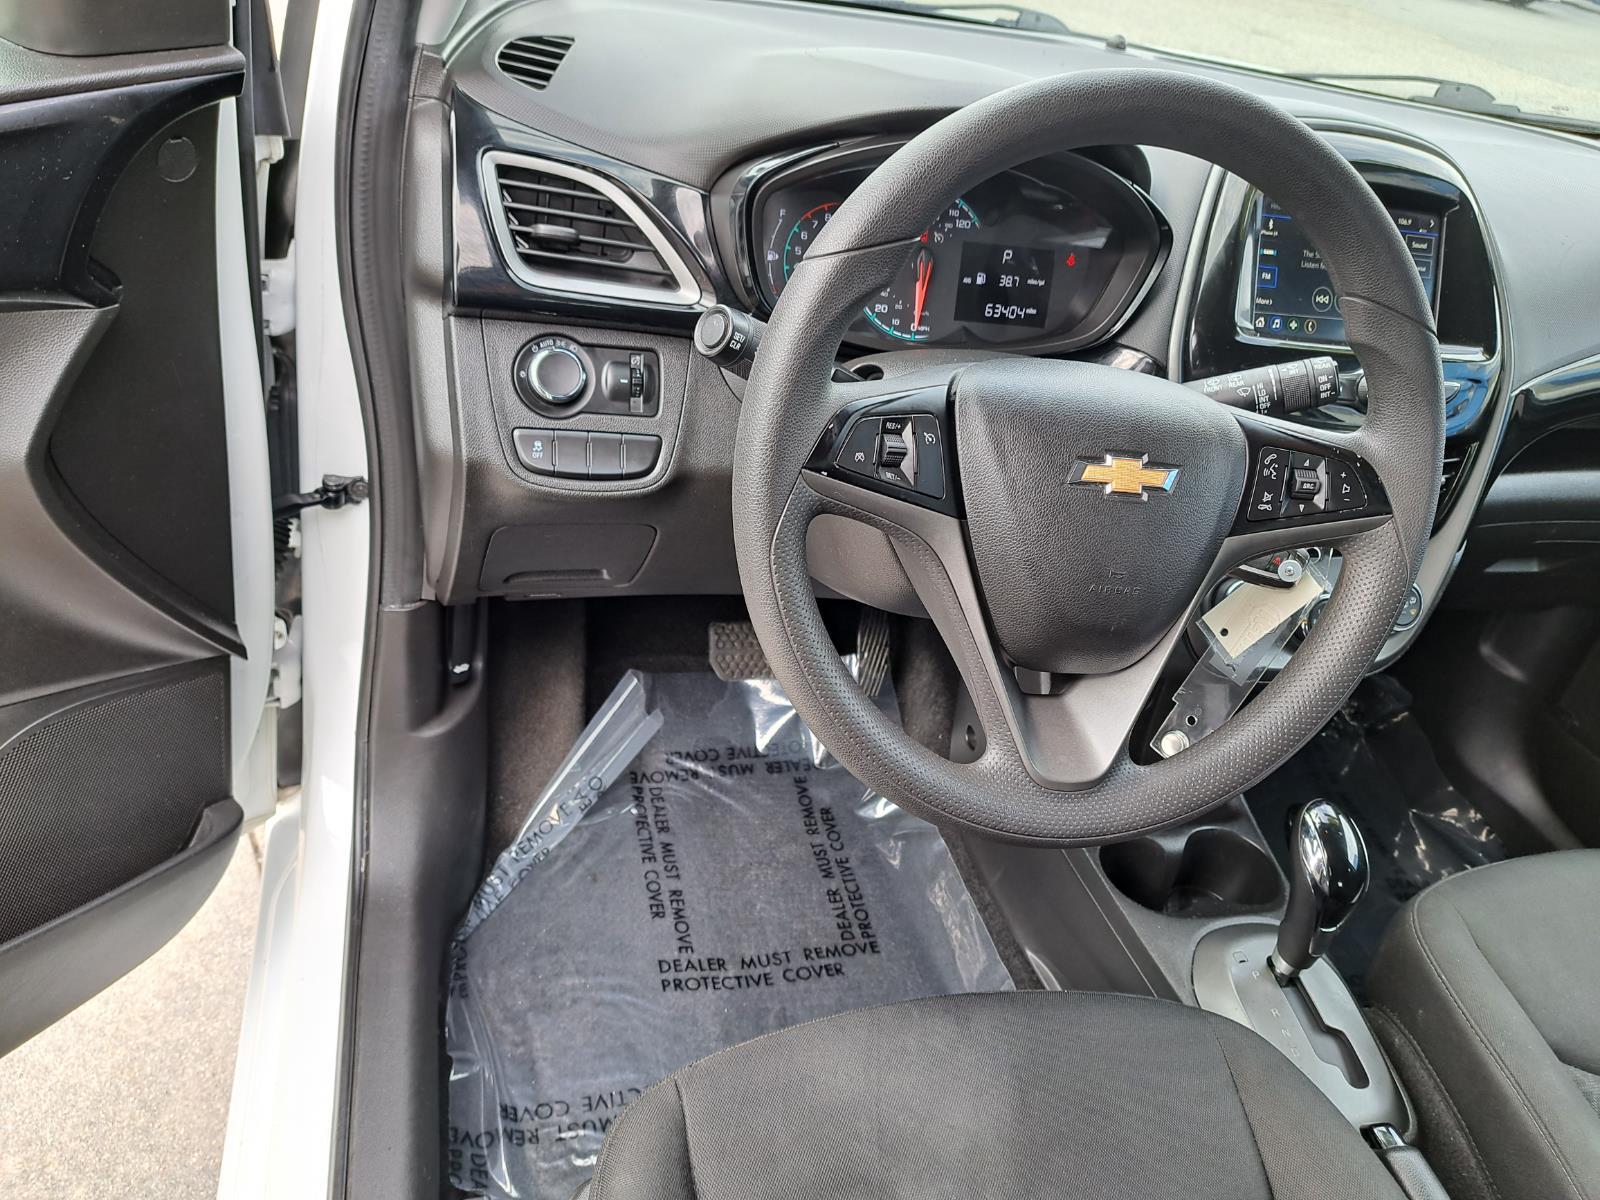 2020 Chevrolet Spark LT Hatchback 4 Dr. Front Wheel Drive 8